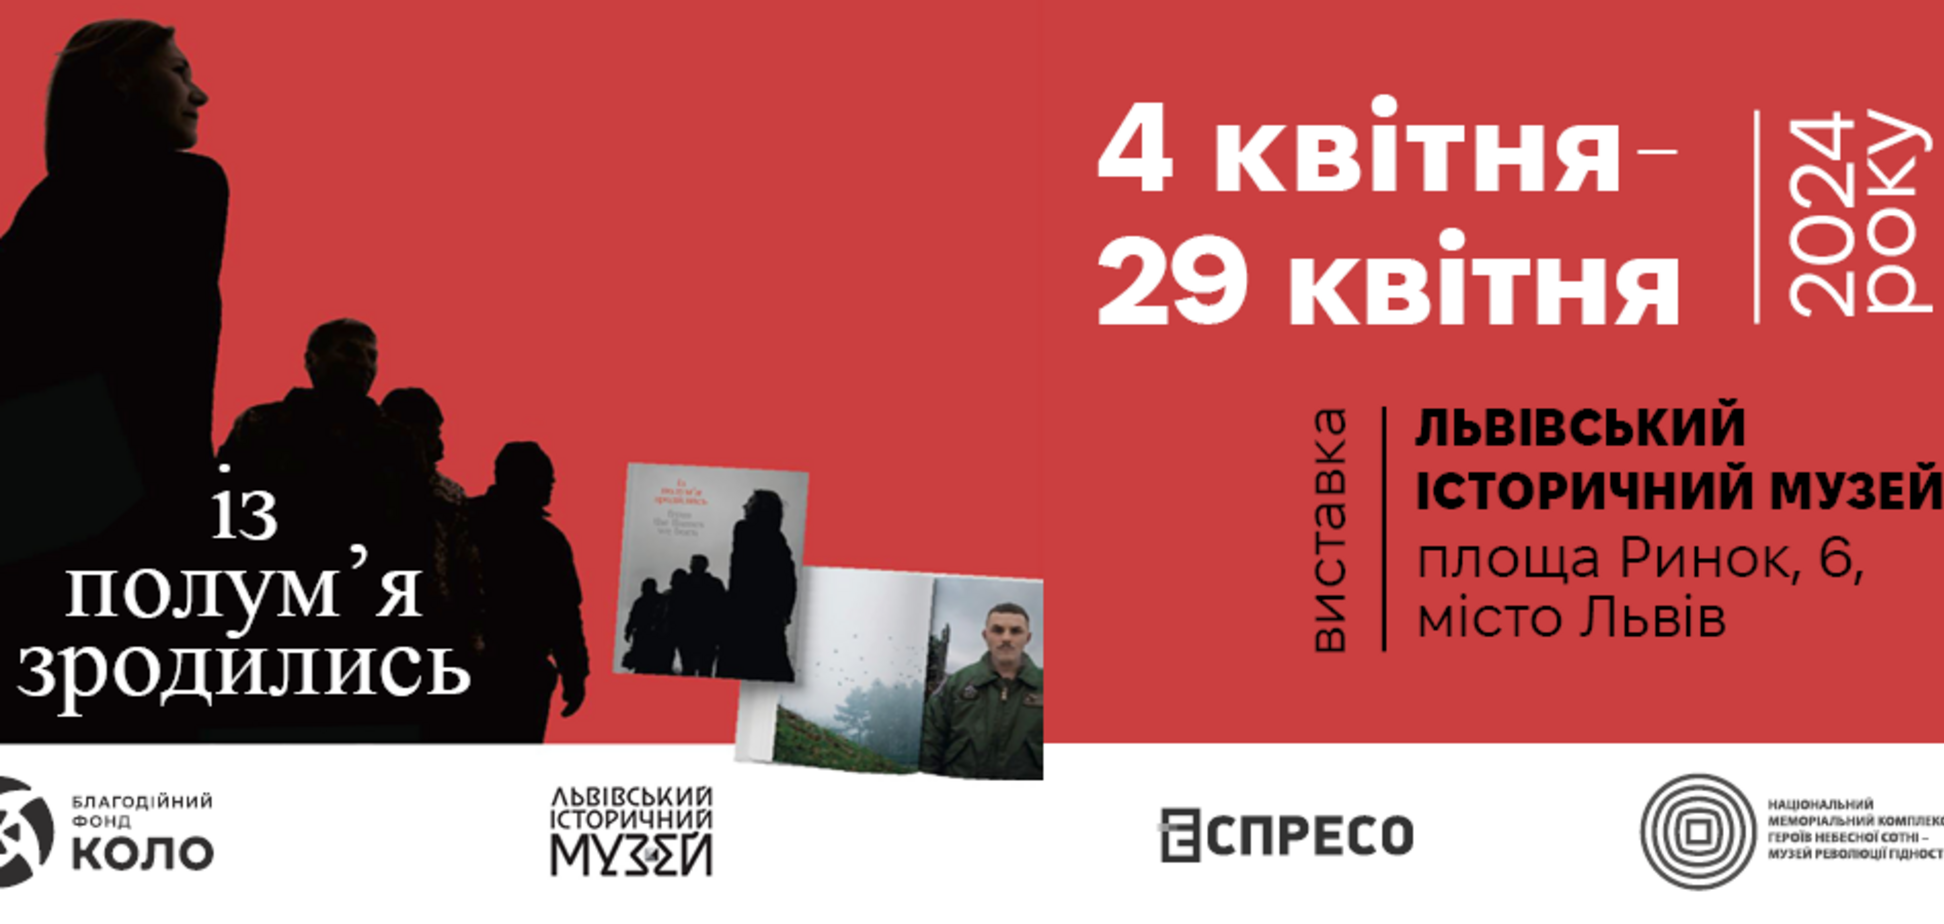 'Із полум'я зродились': у Львові відкривається виставка про Героїв сьогодення